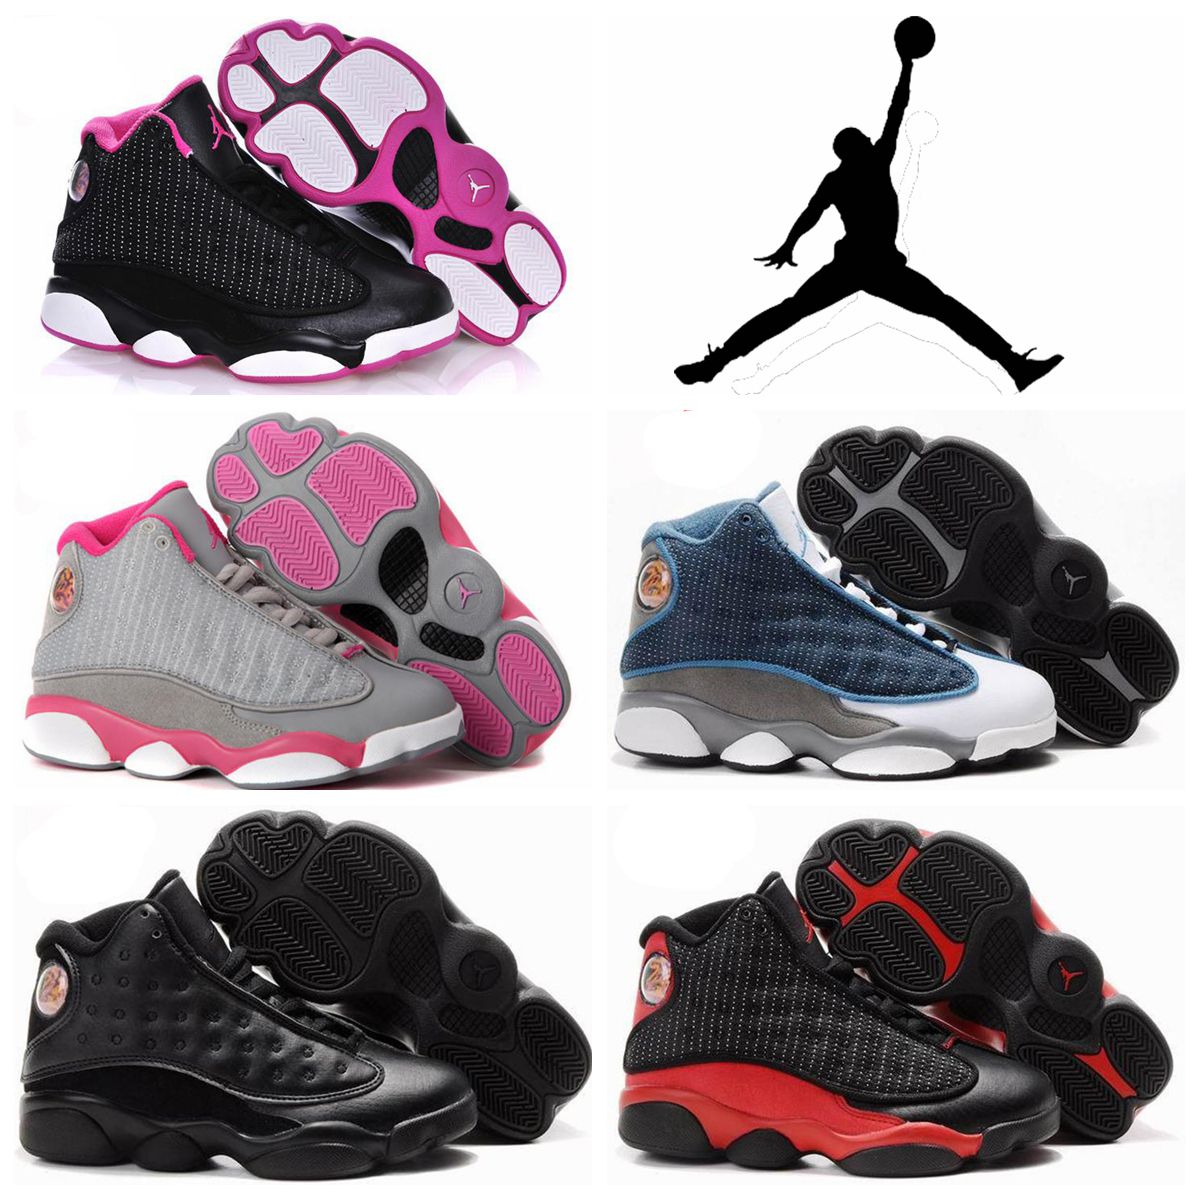 Купить Оптом 2016 Новый Nike Air Jordan 13 Retro Xiii Детская Обувь Мальчики Девочки Баскетбол ...